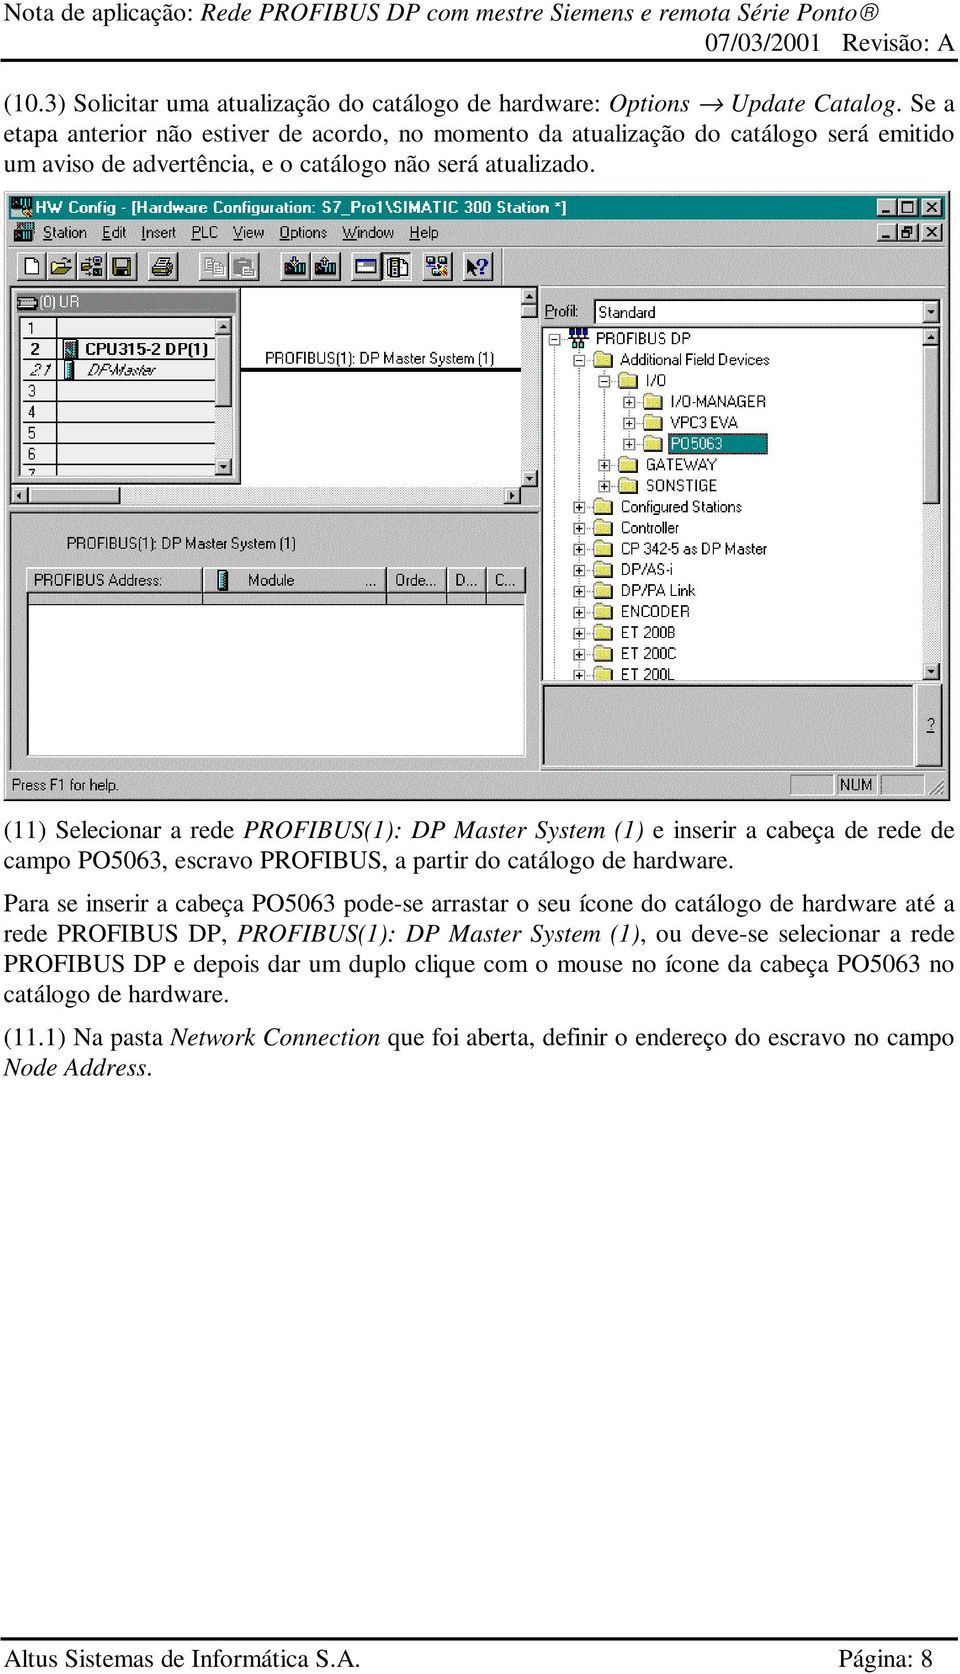 (11) Selecionar a rede PROFIBUS(1): DP Master System (1) e inserir a cabeça de rede de campo PO5063, escravo PROFIBUS, a partir do catálogo de hardware.